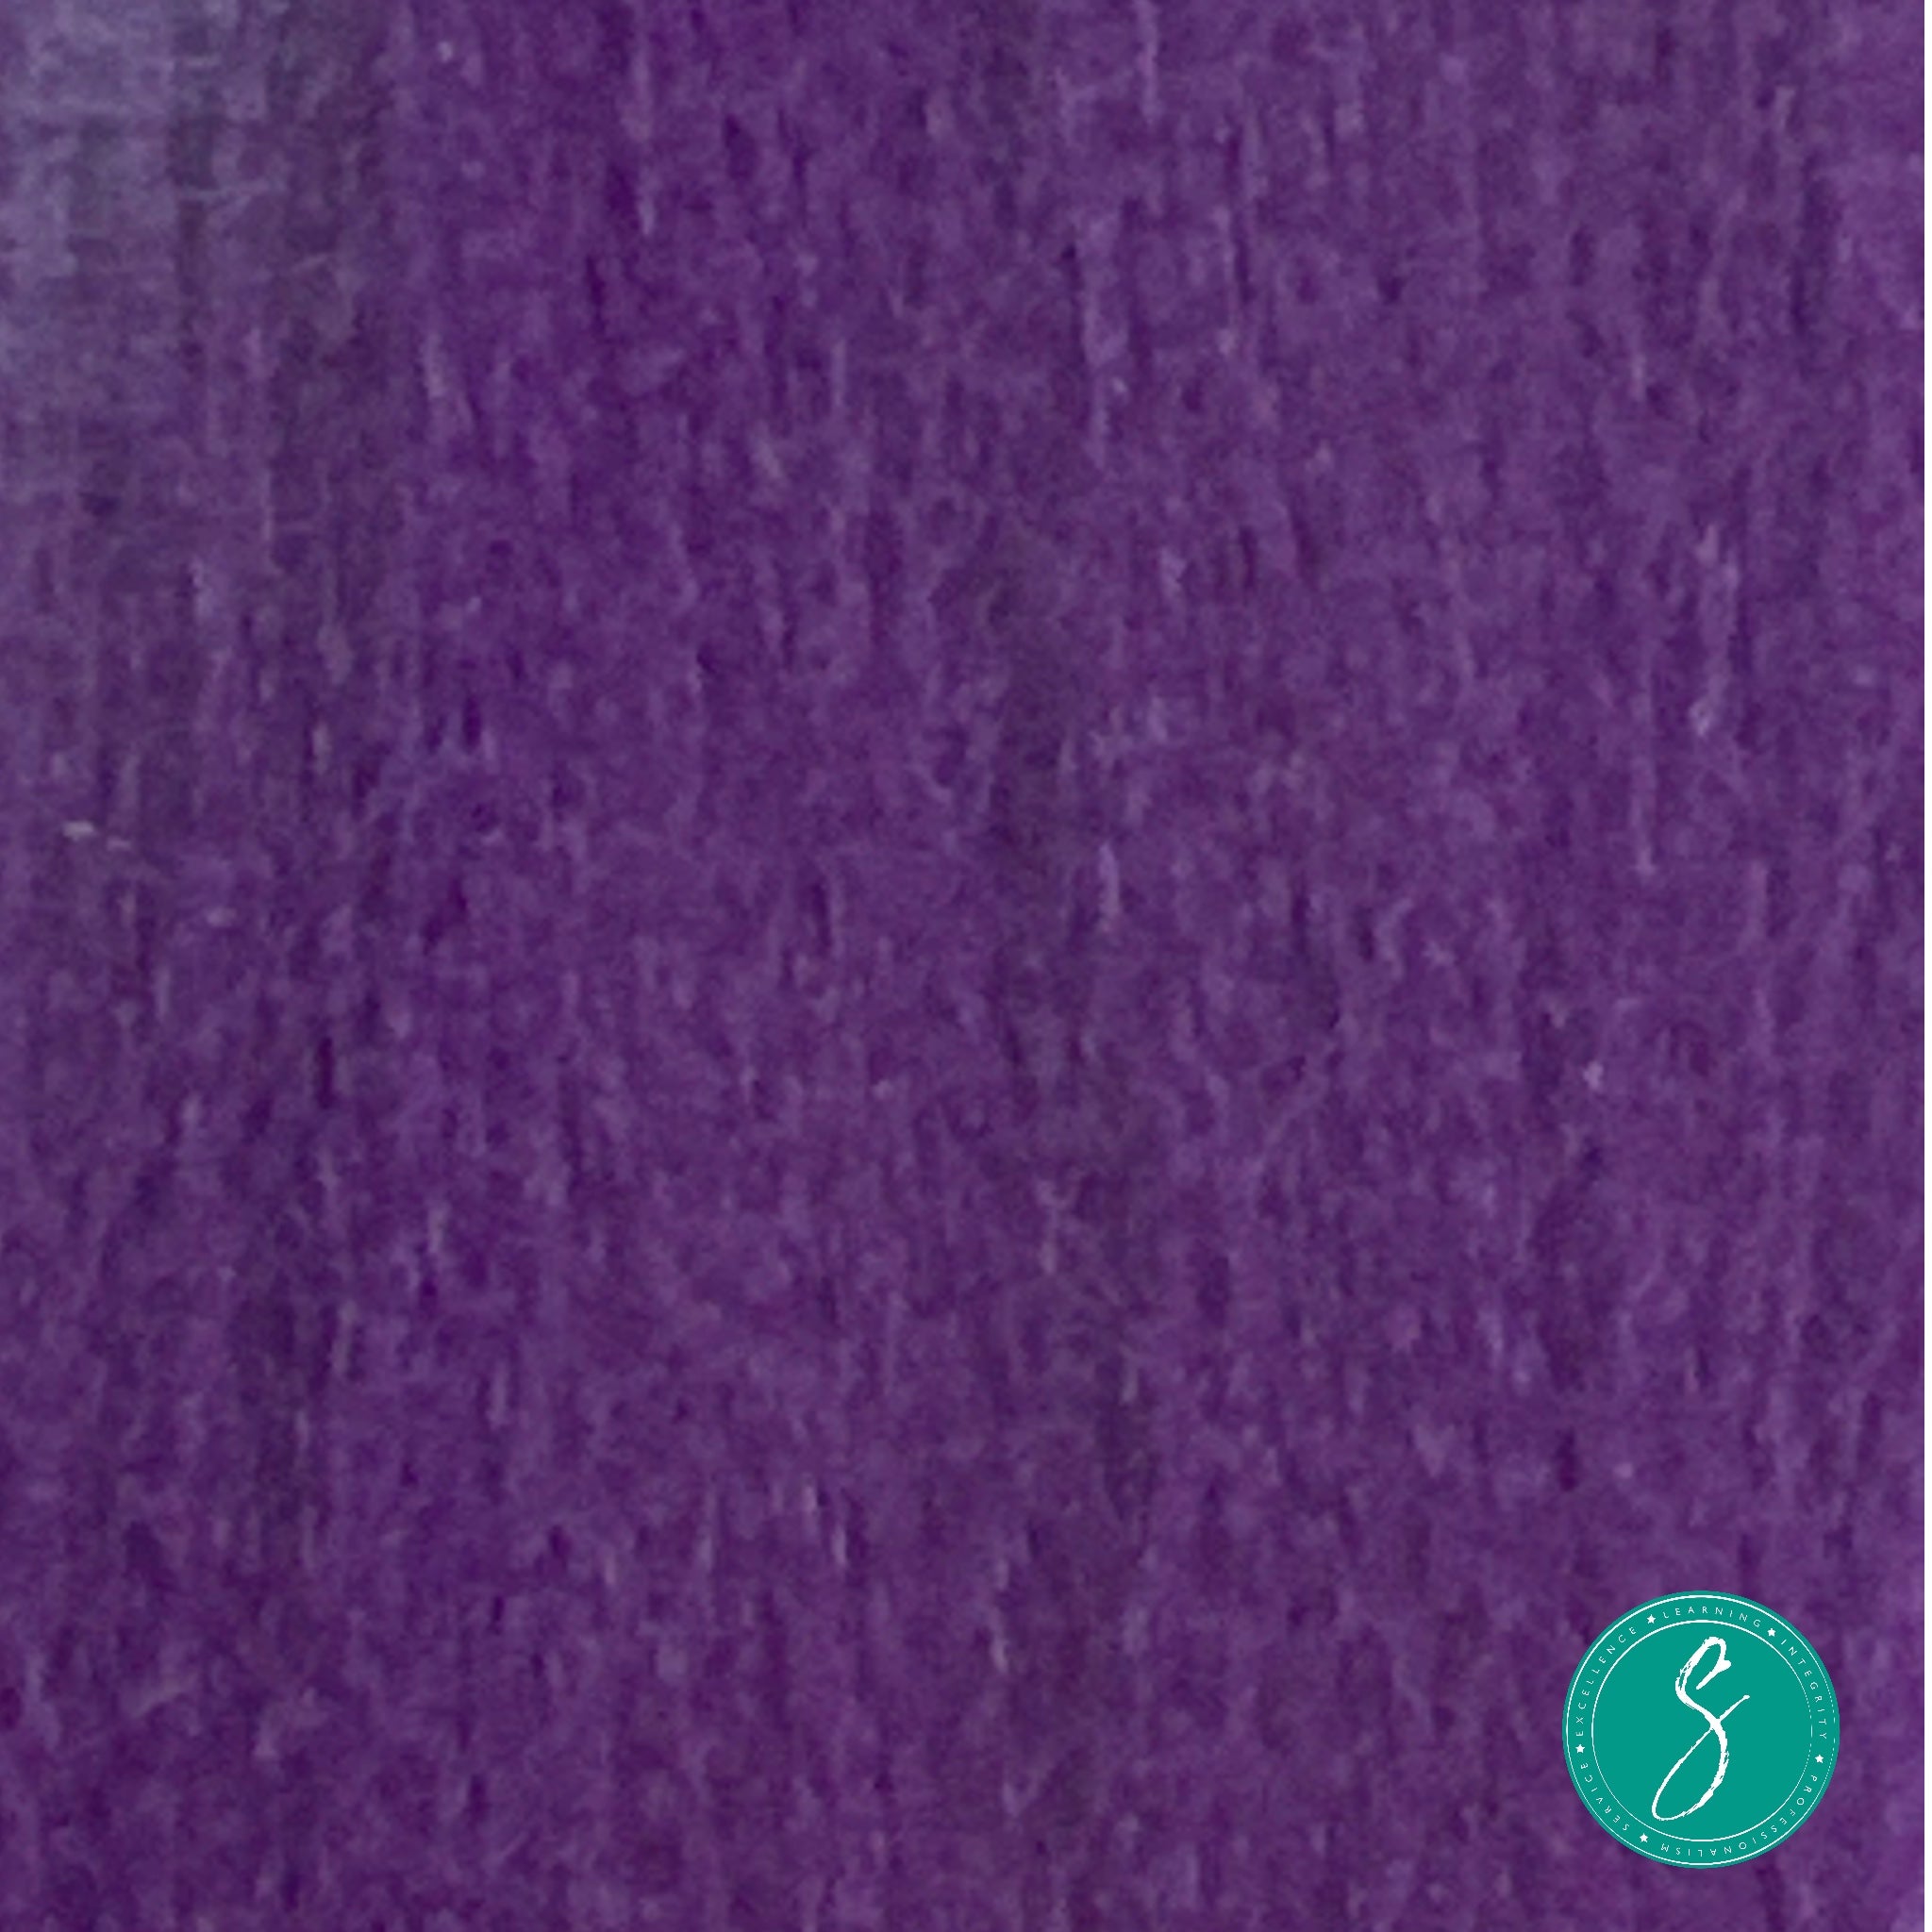 Sonnier Braiding Hair #Purple